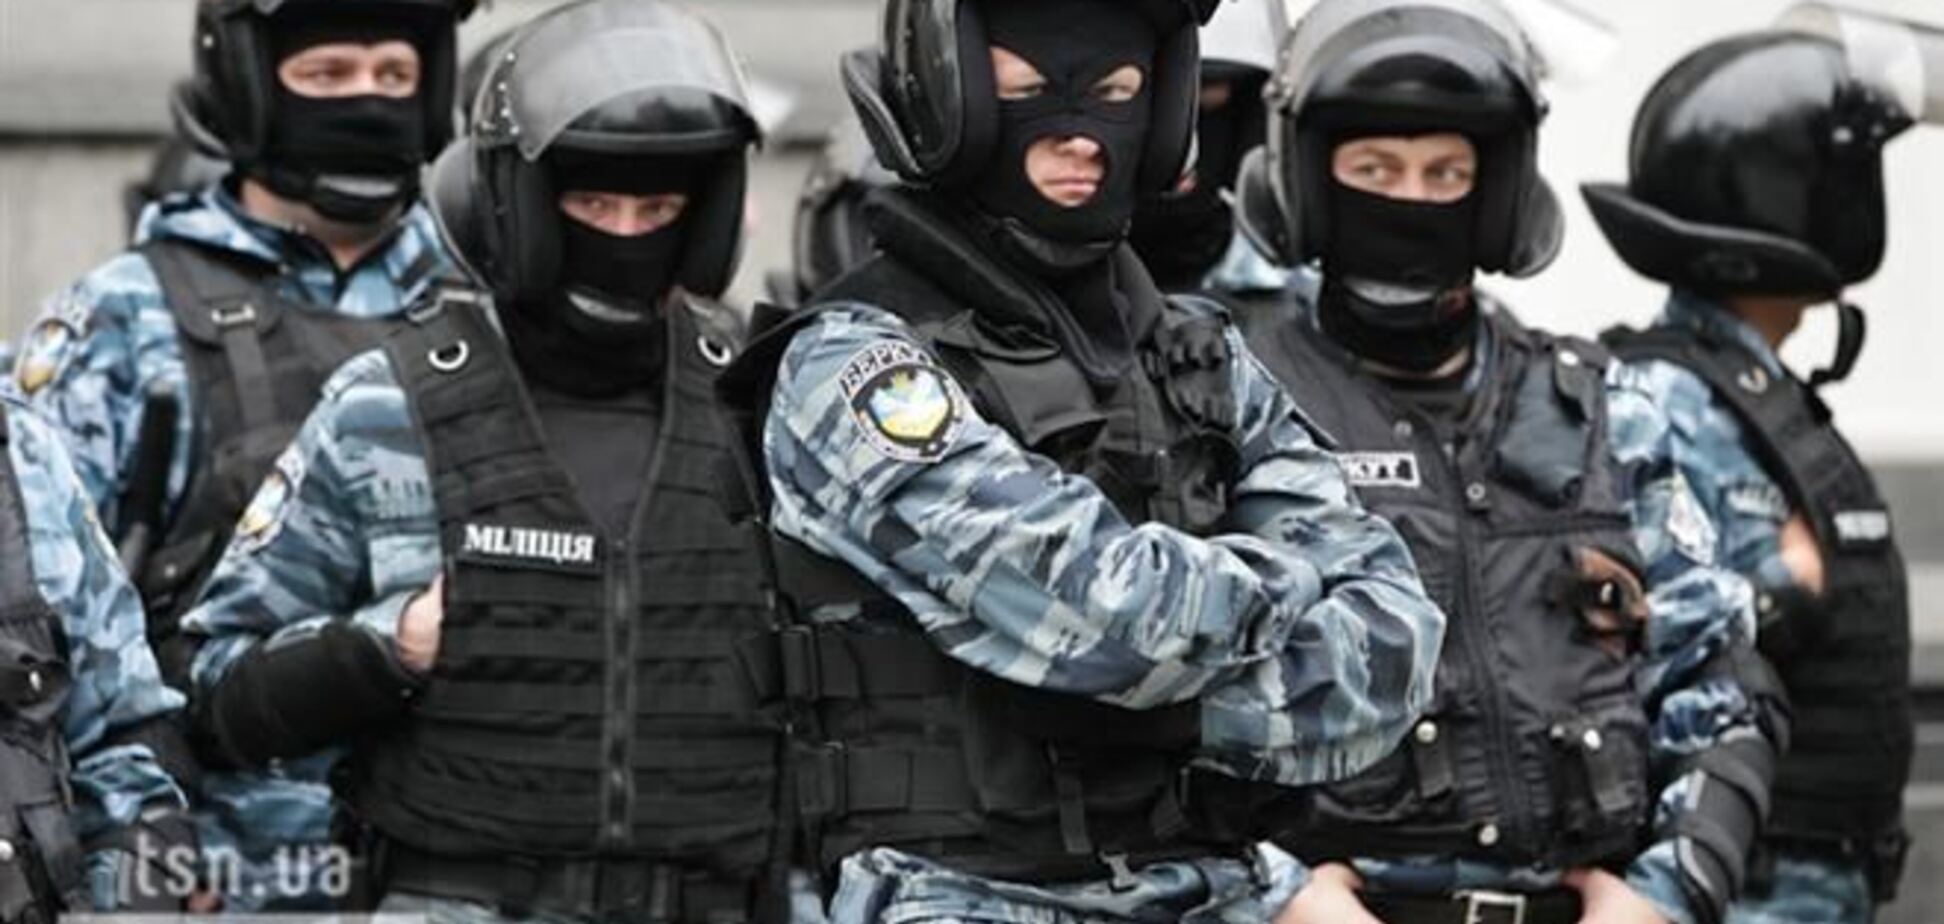 'Беркут' у Криму збунтувався, можуть бути численні жертви - Москаль